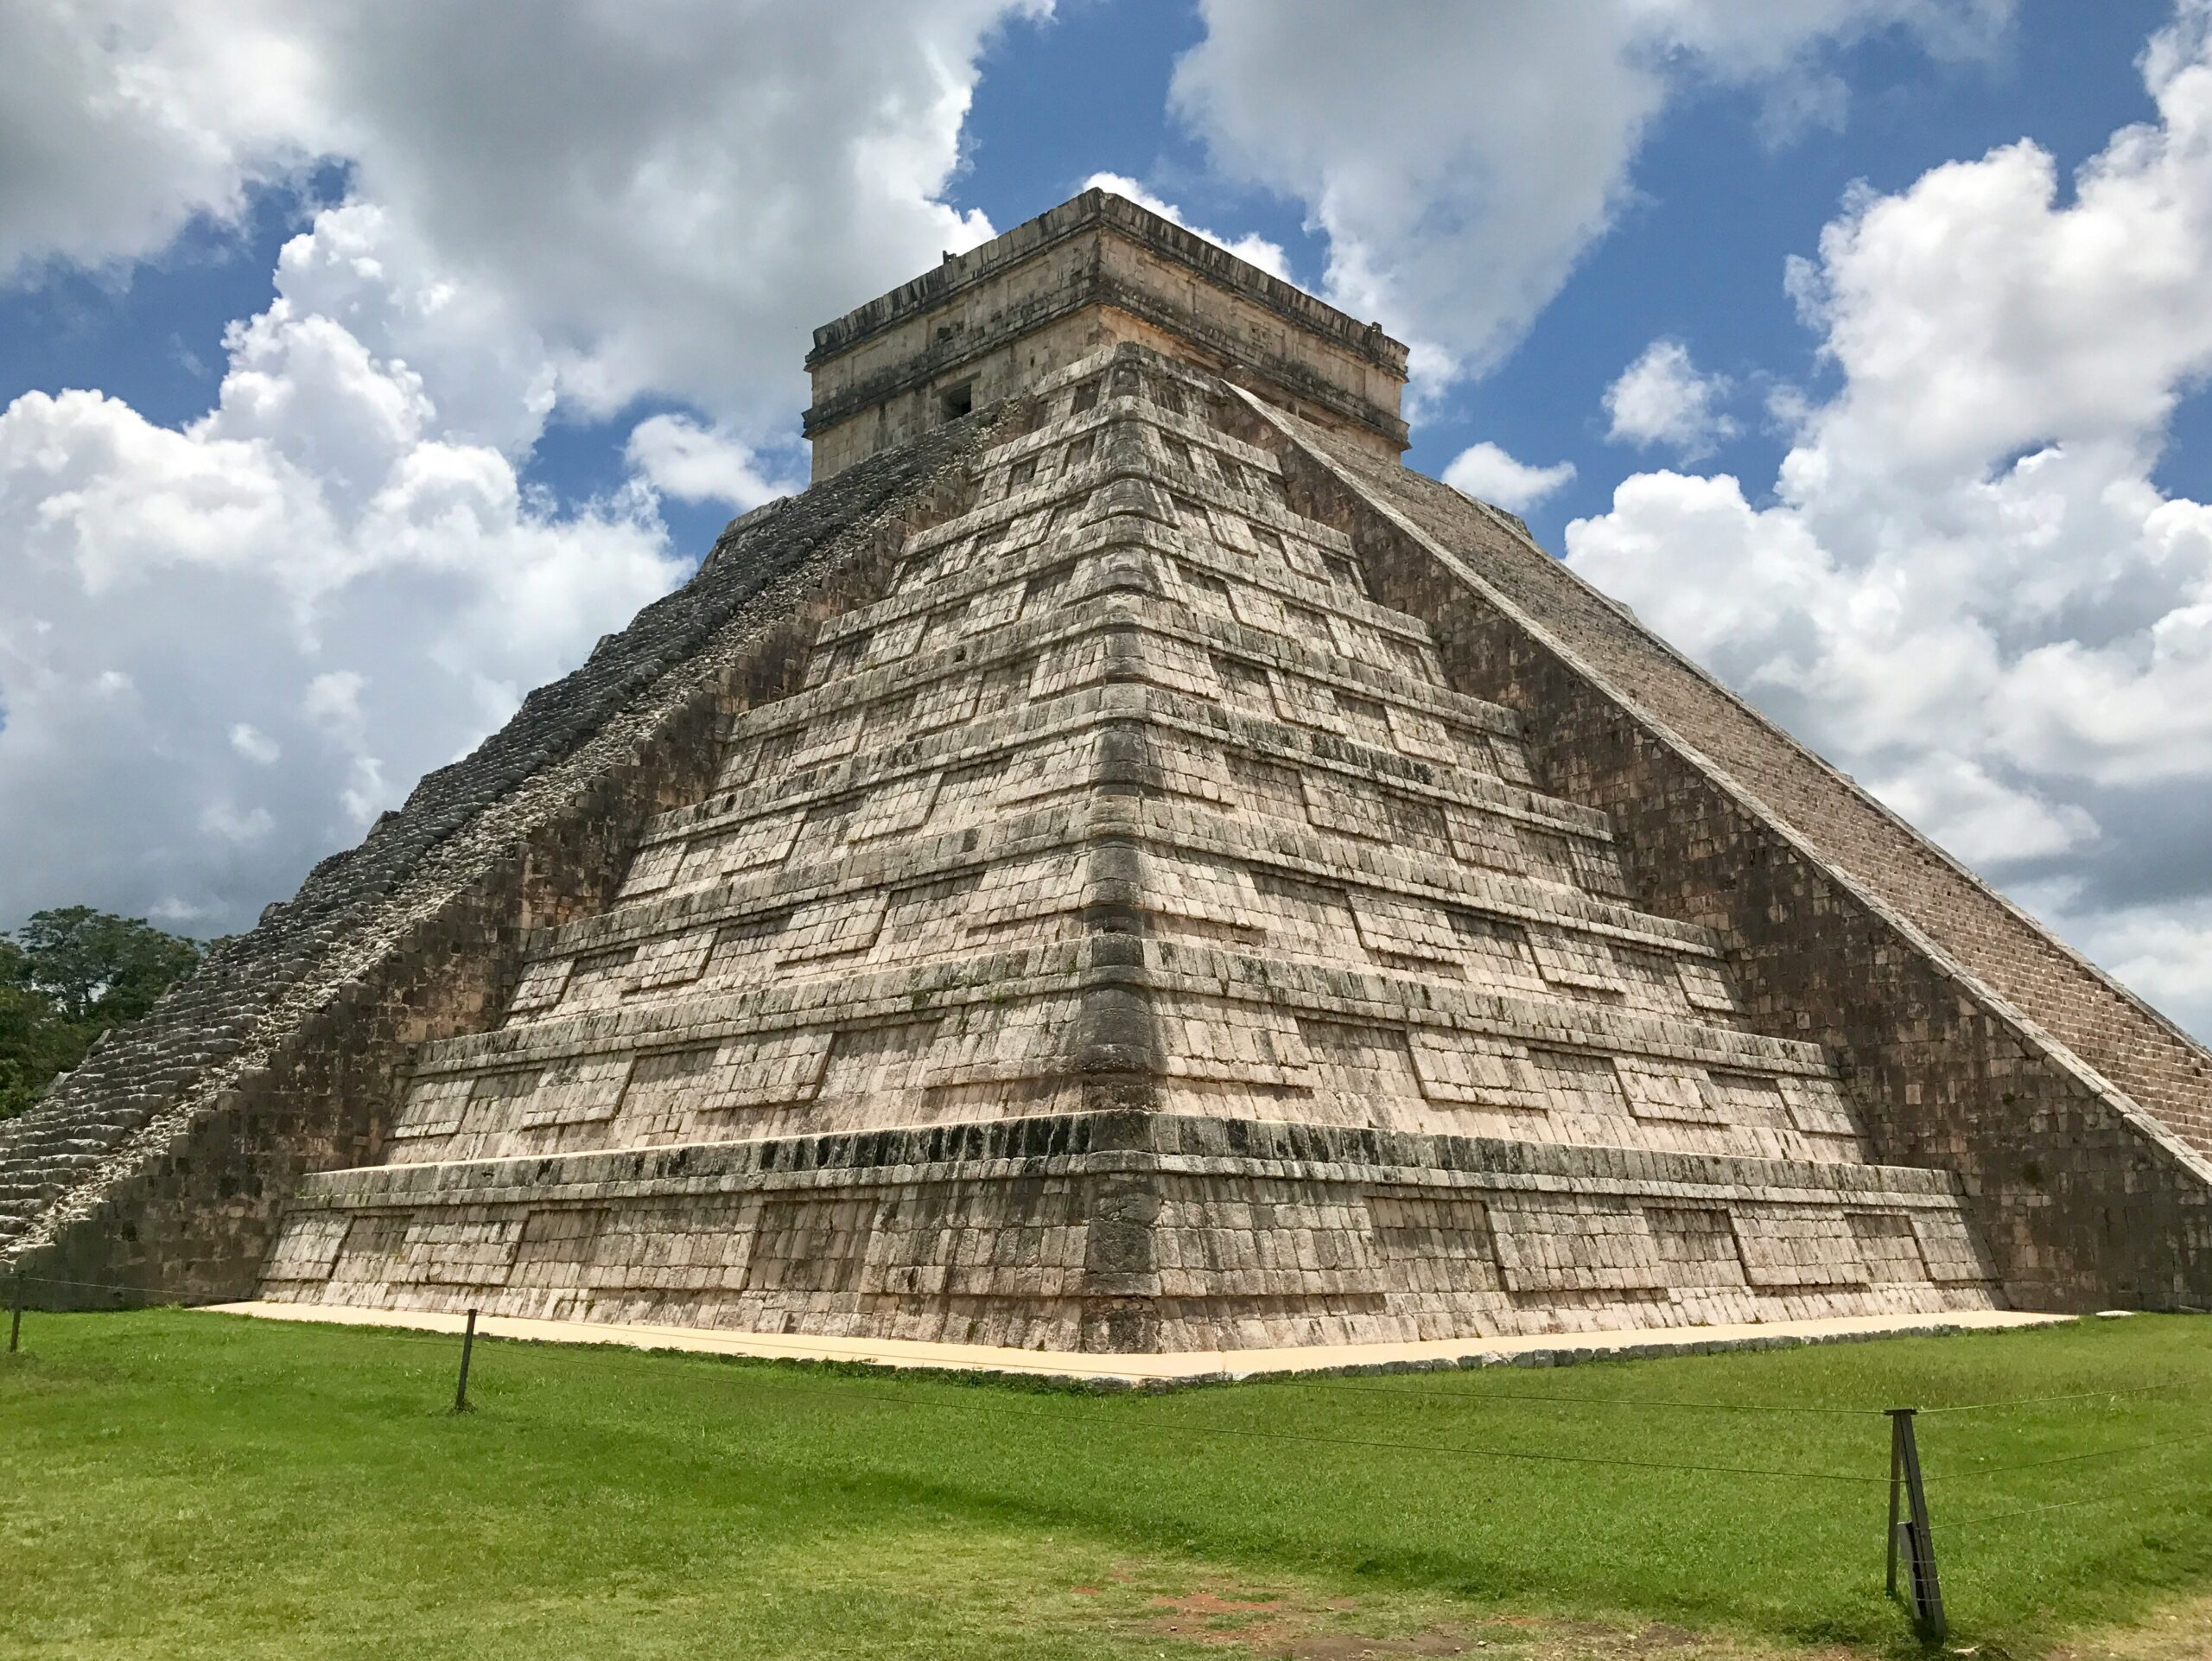 Meksyk - wyjazdy grupowe incentive travel Integracje